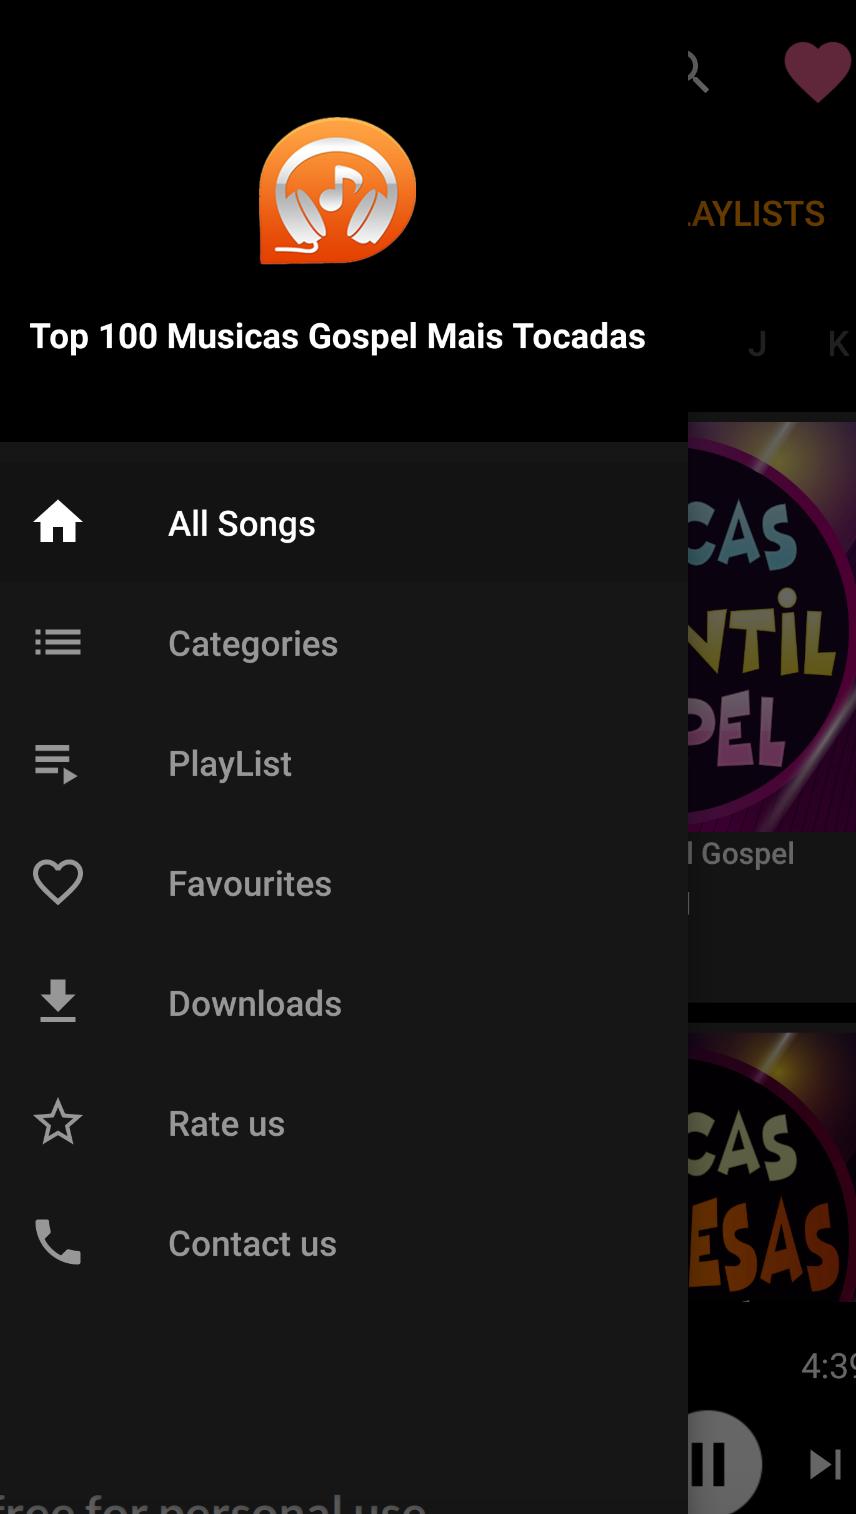 Top 100 Musicas Gospel Mais Tocadas for Android - APK Download